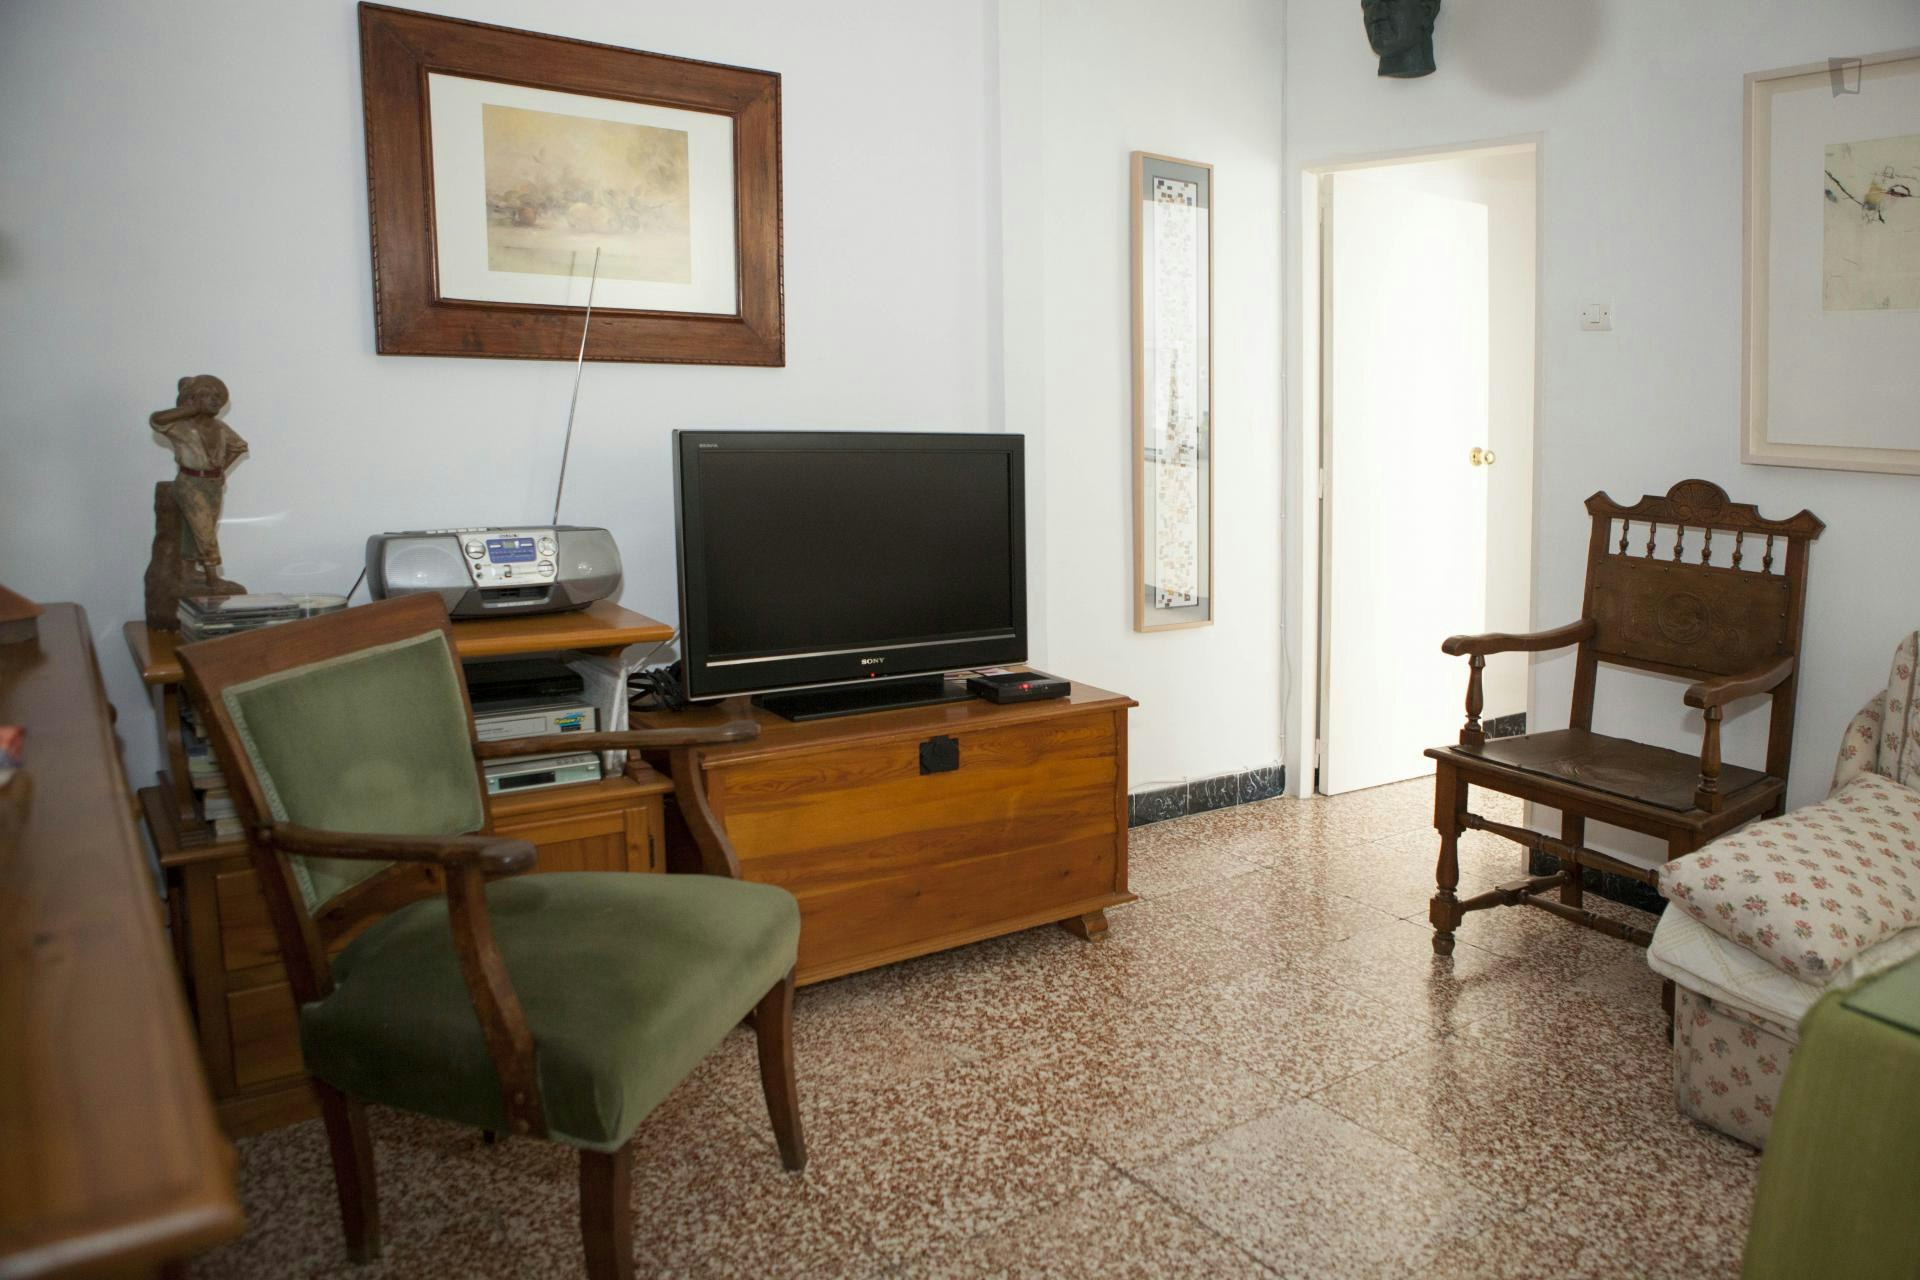 Cute single bedroom in a 3-bedroom apartment close to Museo de Bellas Artes